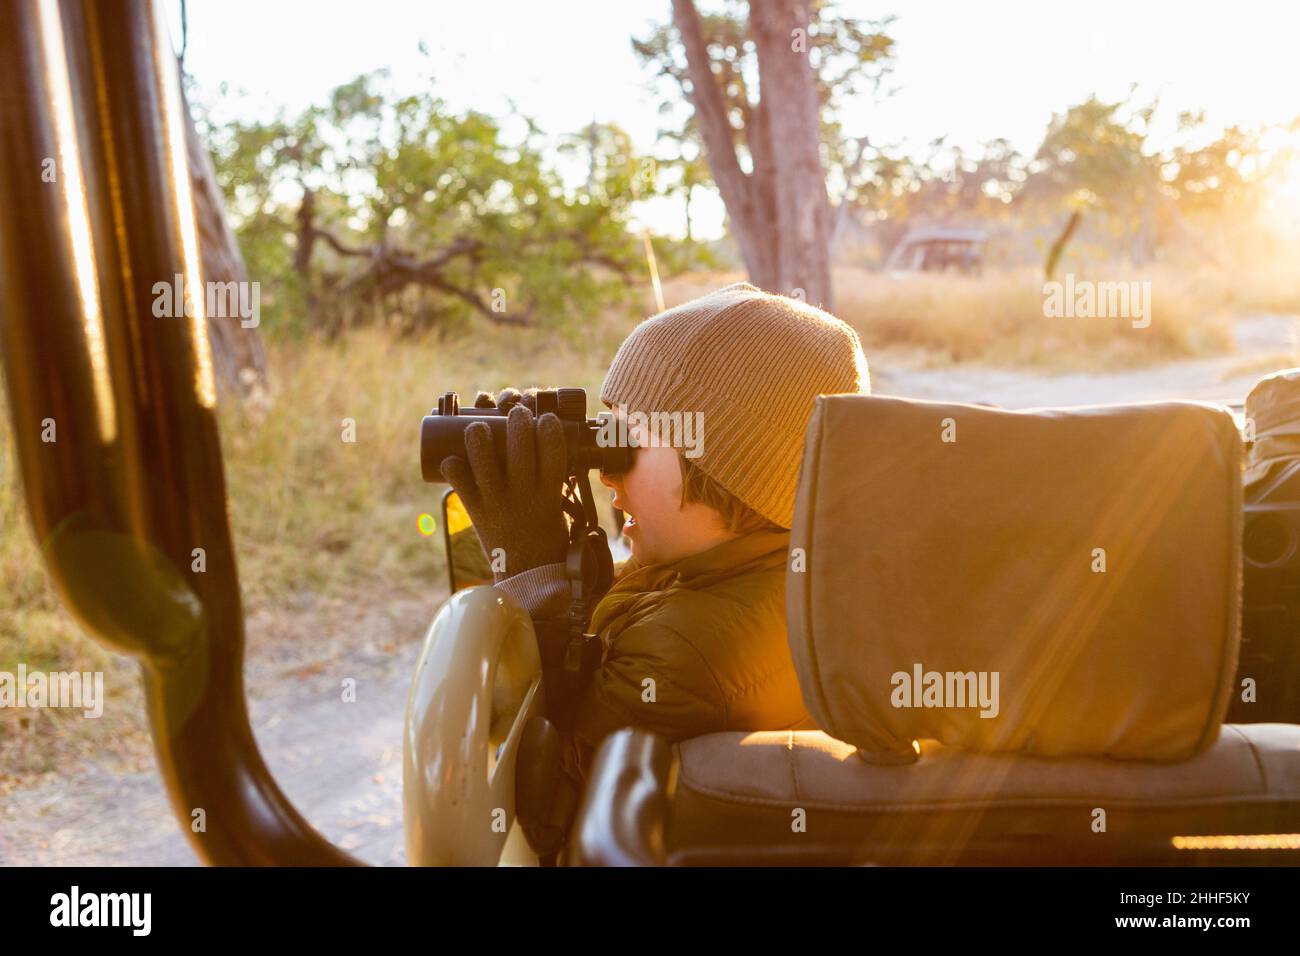 Jeune garçon dans une jeep à l'aide de jumelles, une voiture à l'aube à travers le Bush. Banque D'Images